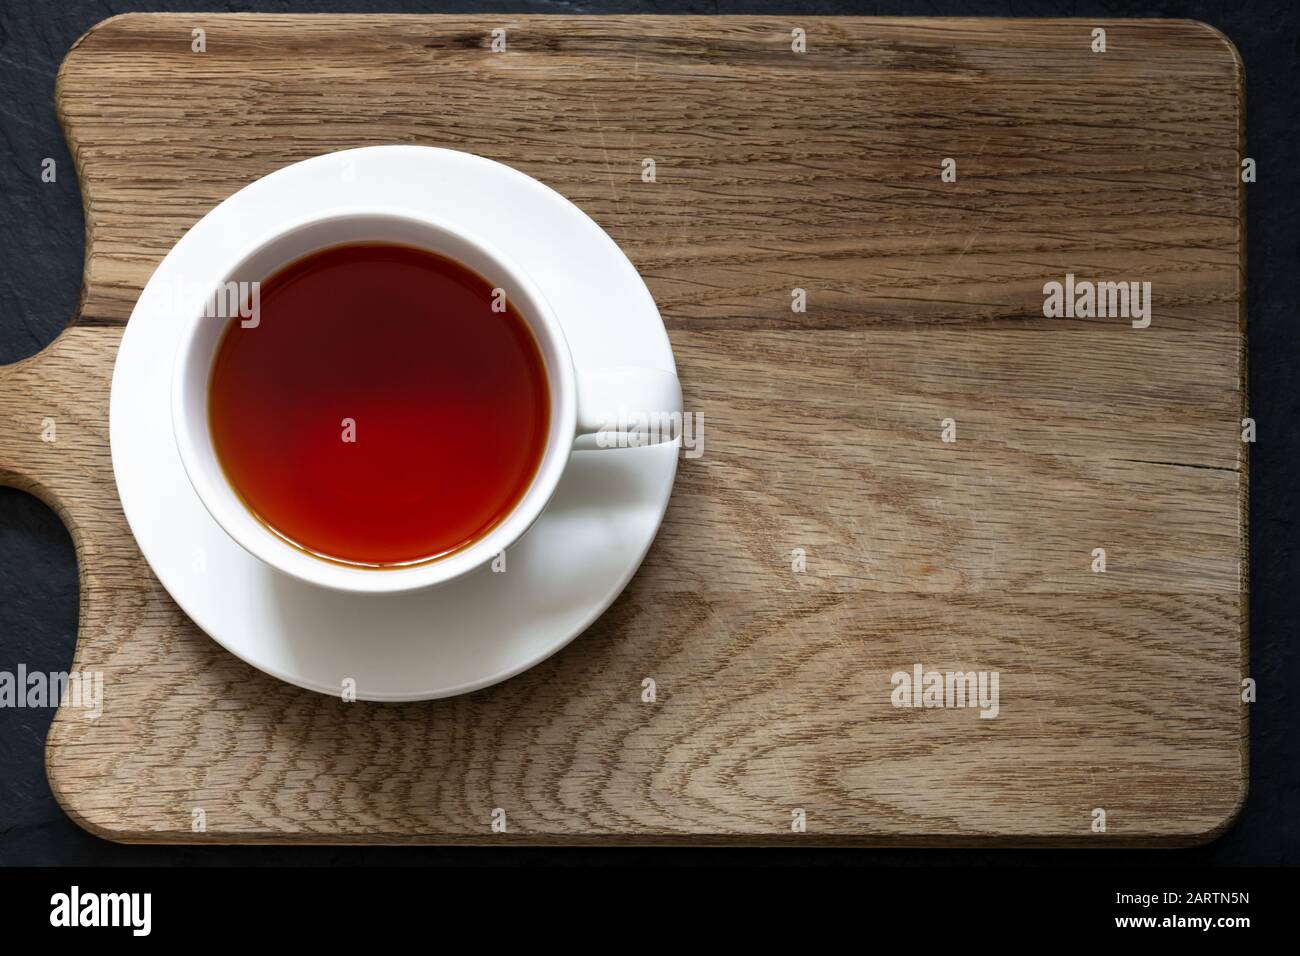 Foto superior de té Rooibos claro en taza blanca y platillo en una tabla de cortar de madera con pizarra negra abajo. Foto de stock